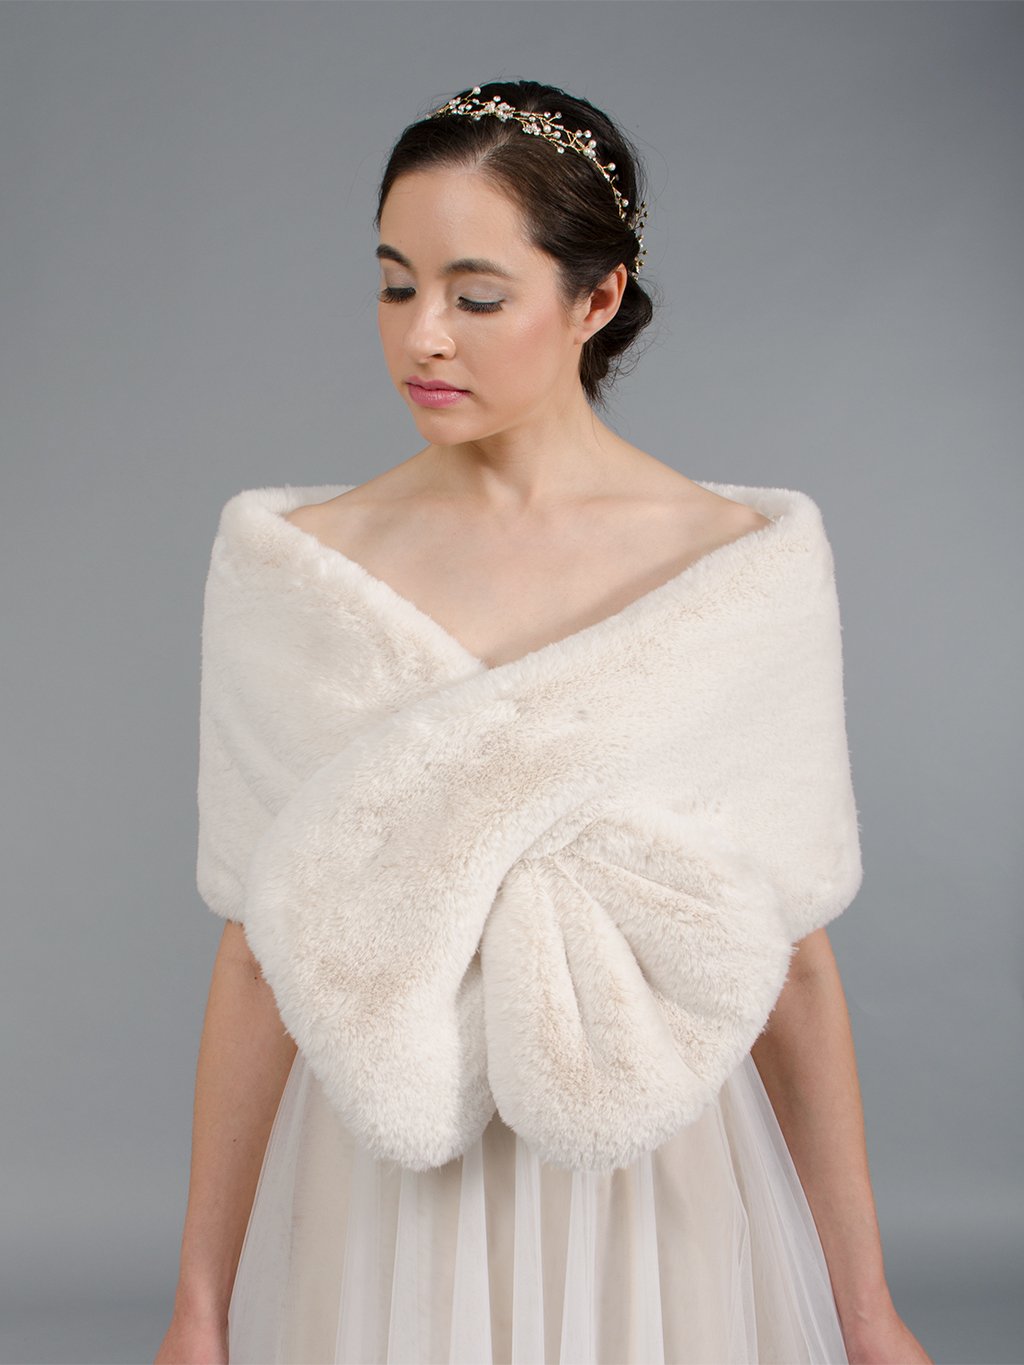 Blush / light brown faux fur wrap bridal stole B004-blush